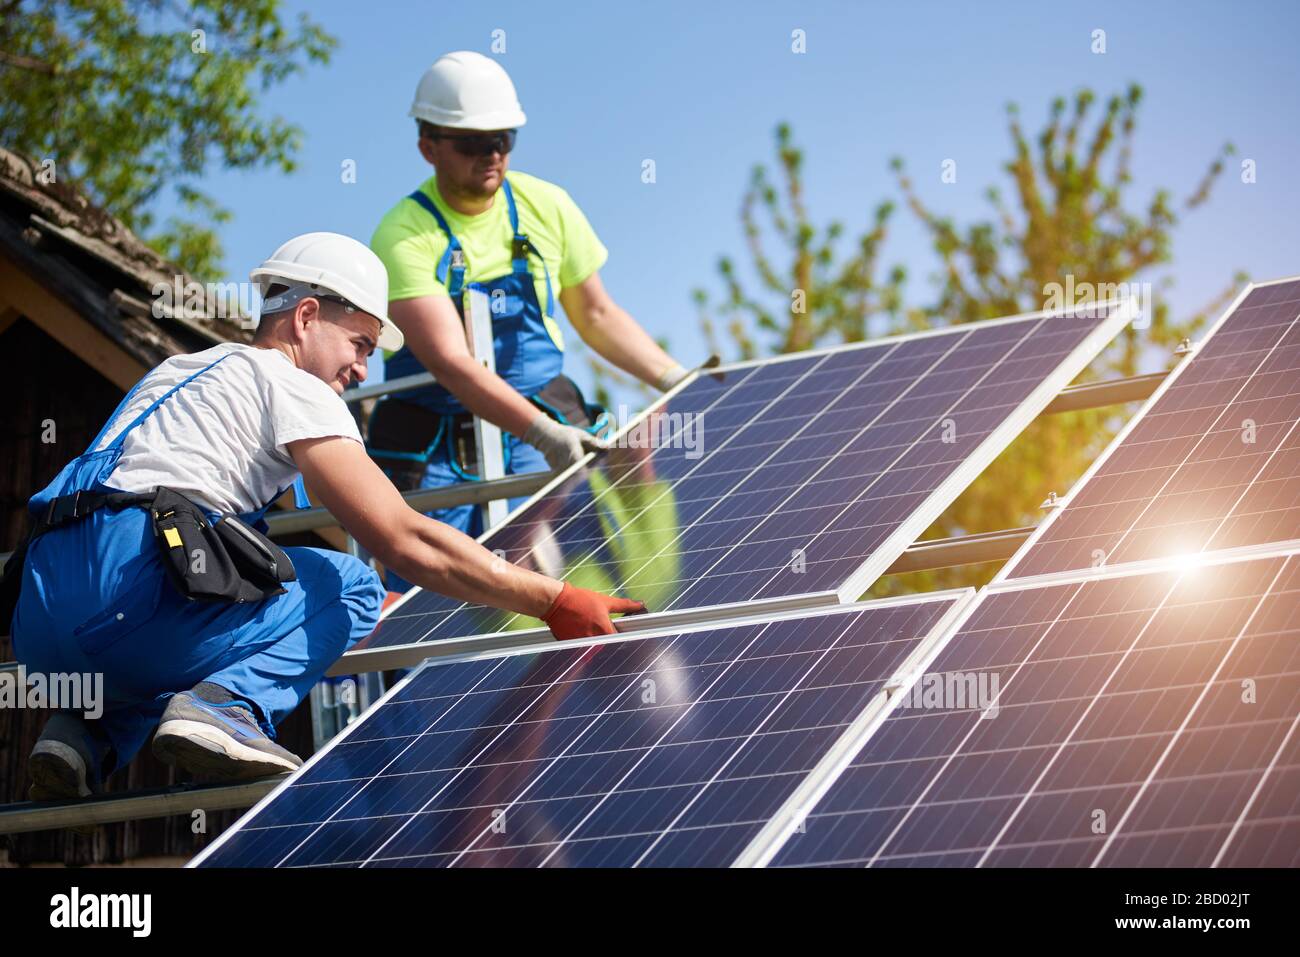 Zwei professionelle Techniker, die schwere Solar-Lichtschnur auf einer hohen Stahlplattform installieren. Installation von externen Solaranlagen, alternatives Konzept zur Erzeugung erneuerbarer grüner Energie. Stockfoto